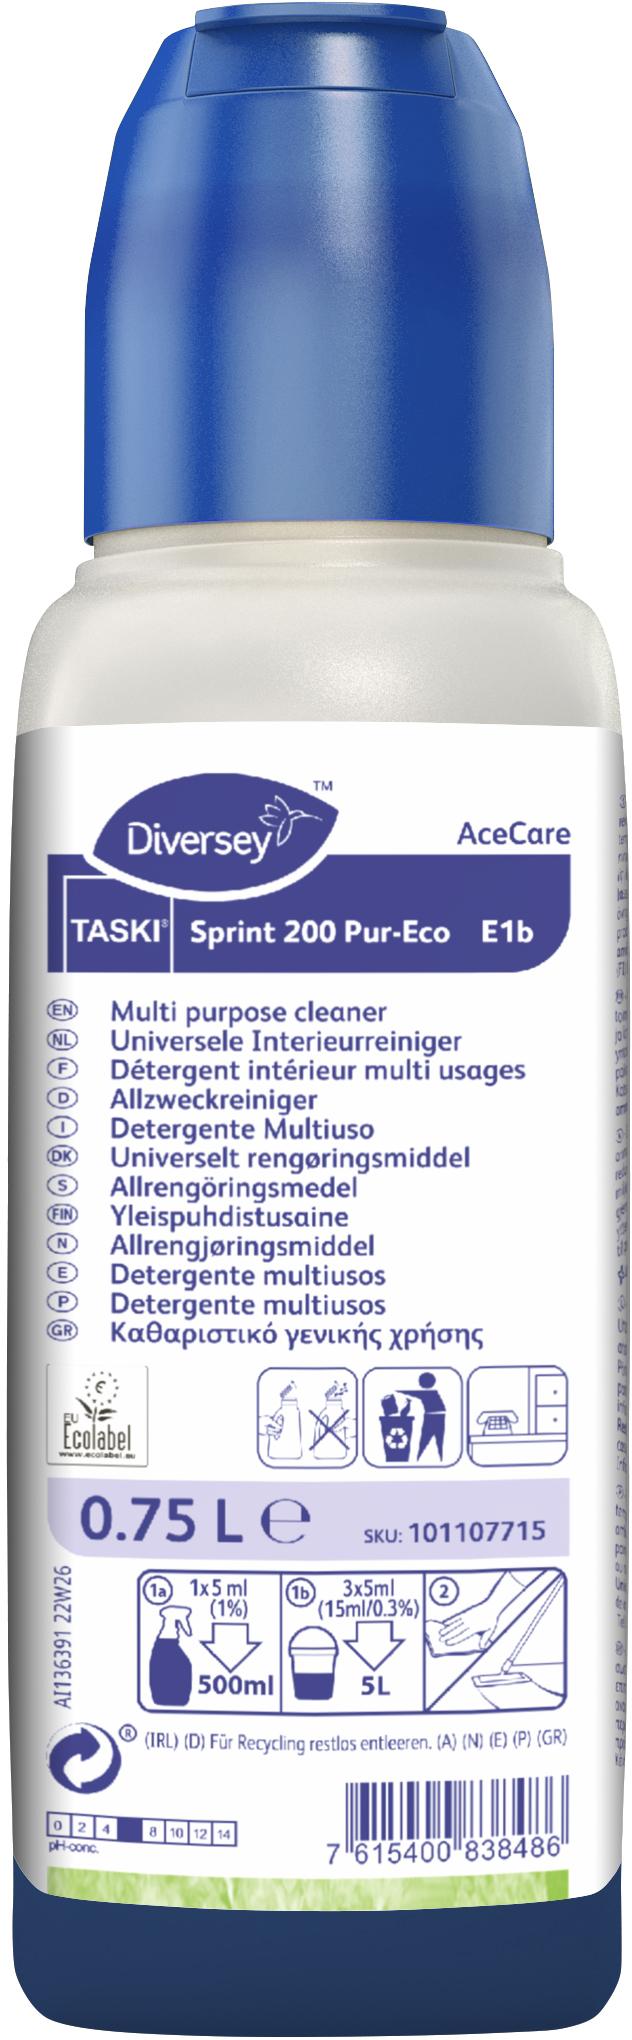 Image de TASKI Sprint 200 Pur-Eco Ace Care